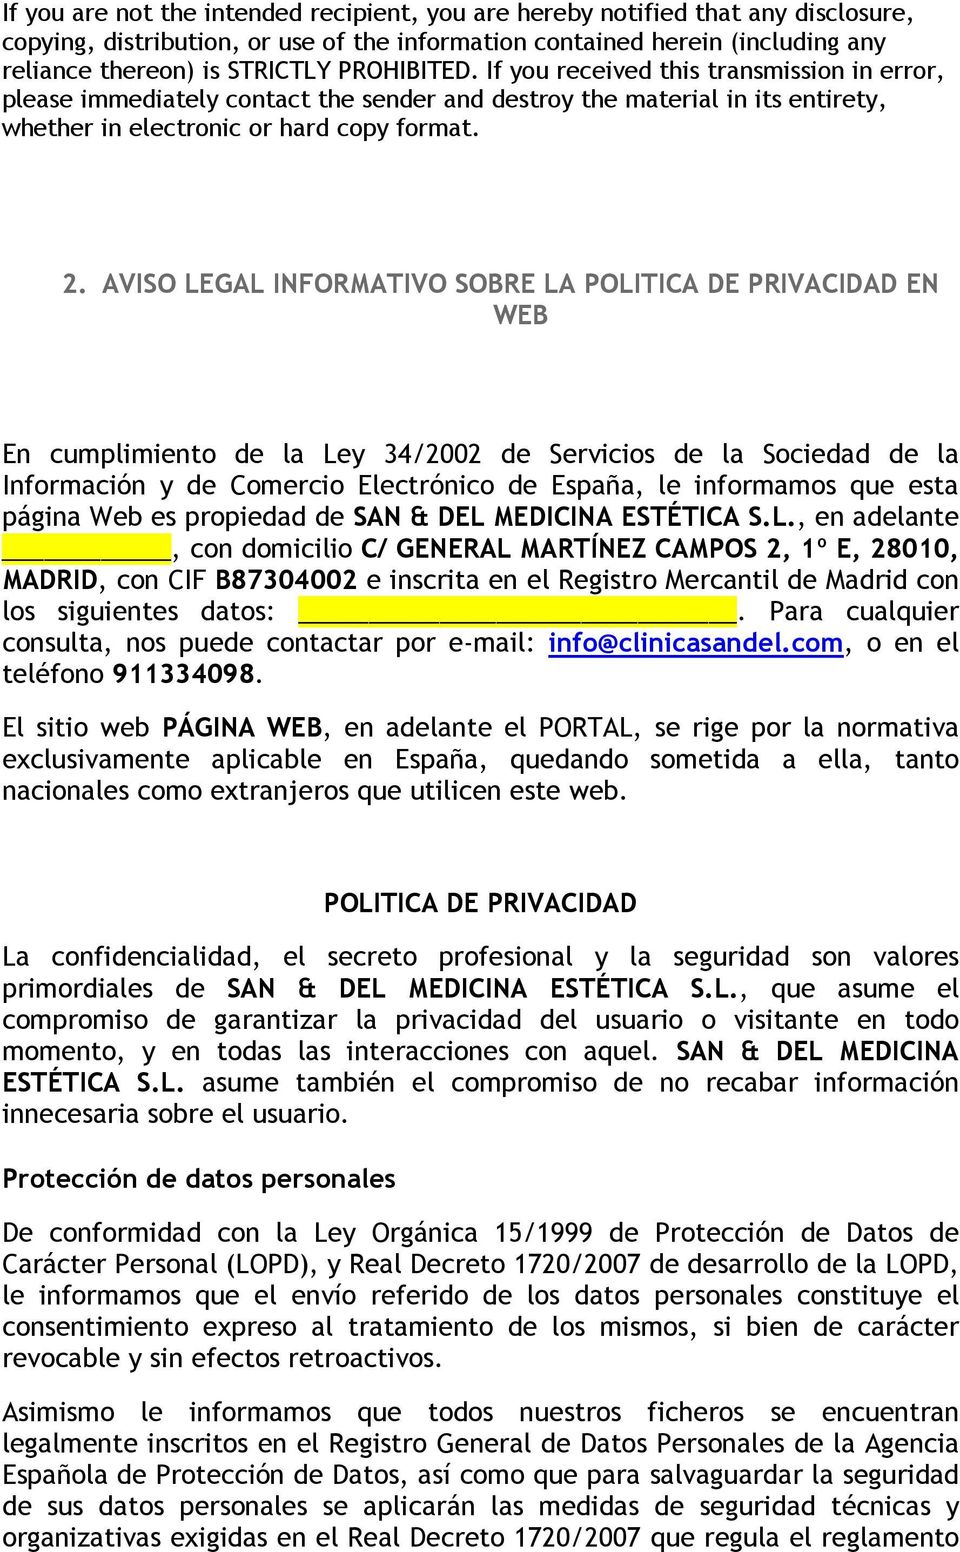 AVISO LEGAL INFORMATIVO SOBRE LA POLITICA DE PRIVACIDAD EN WEB En cumplimiento de la Ley 34/2002 de Servicios de la Sociedad de la Información y de Comercio Electrónico de España, le informamos que